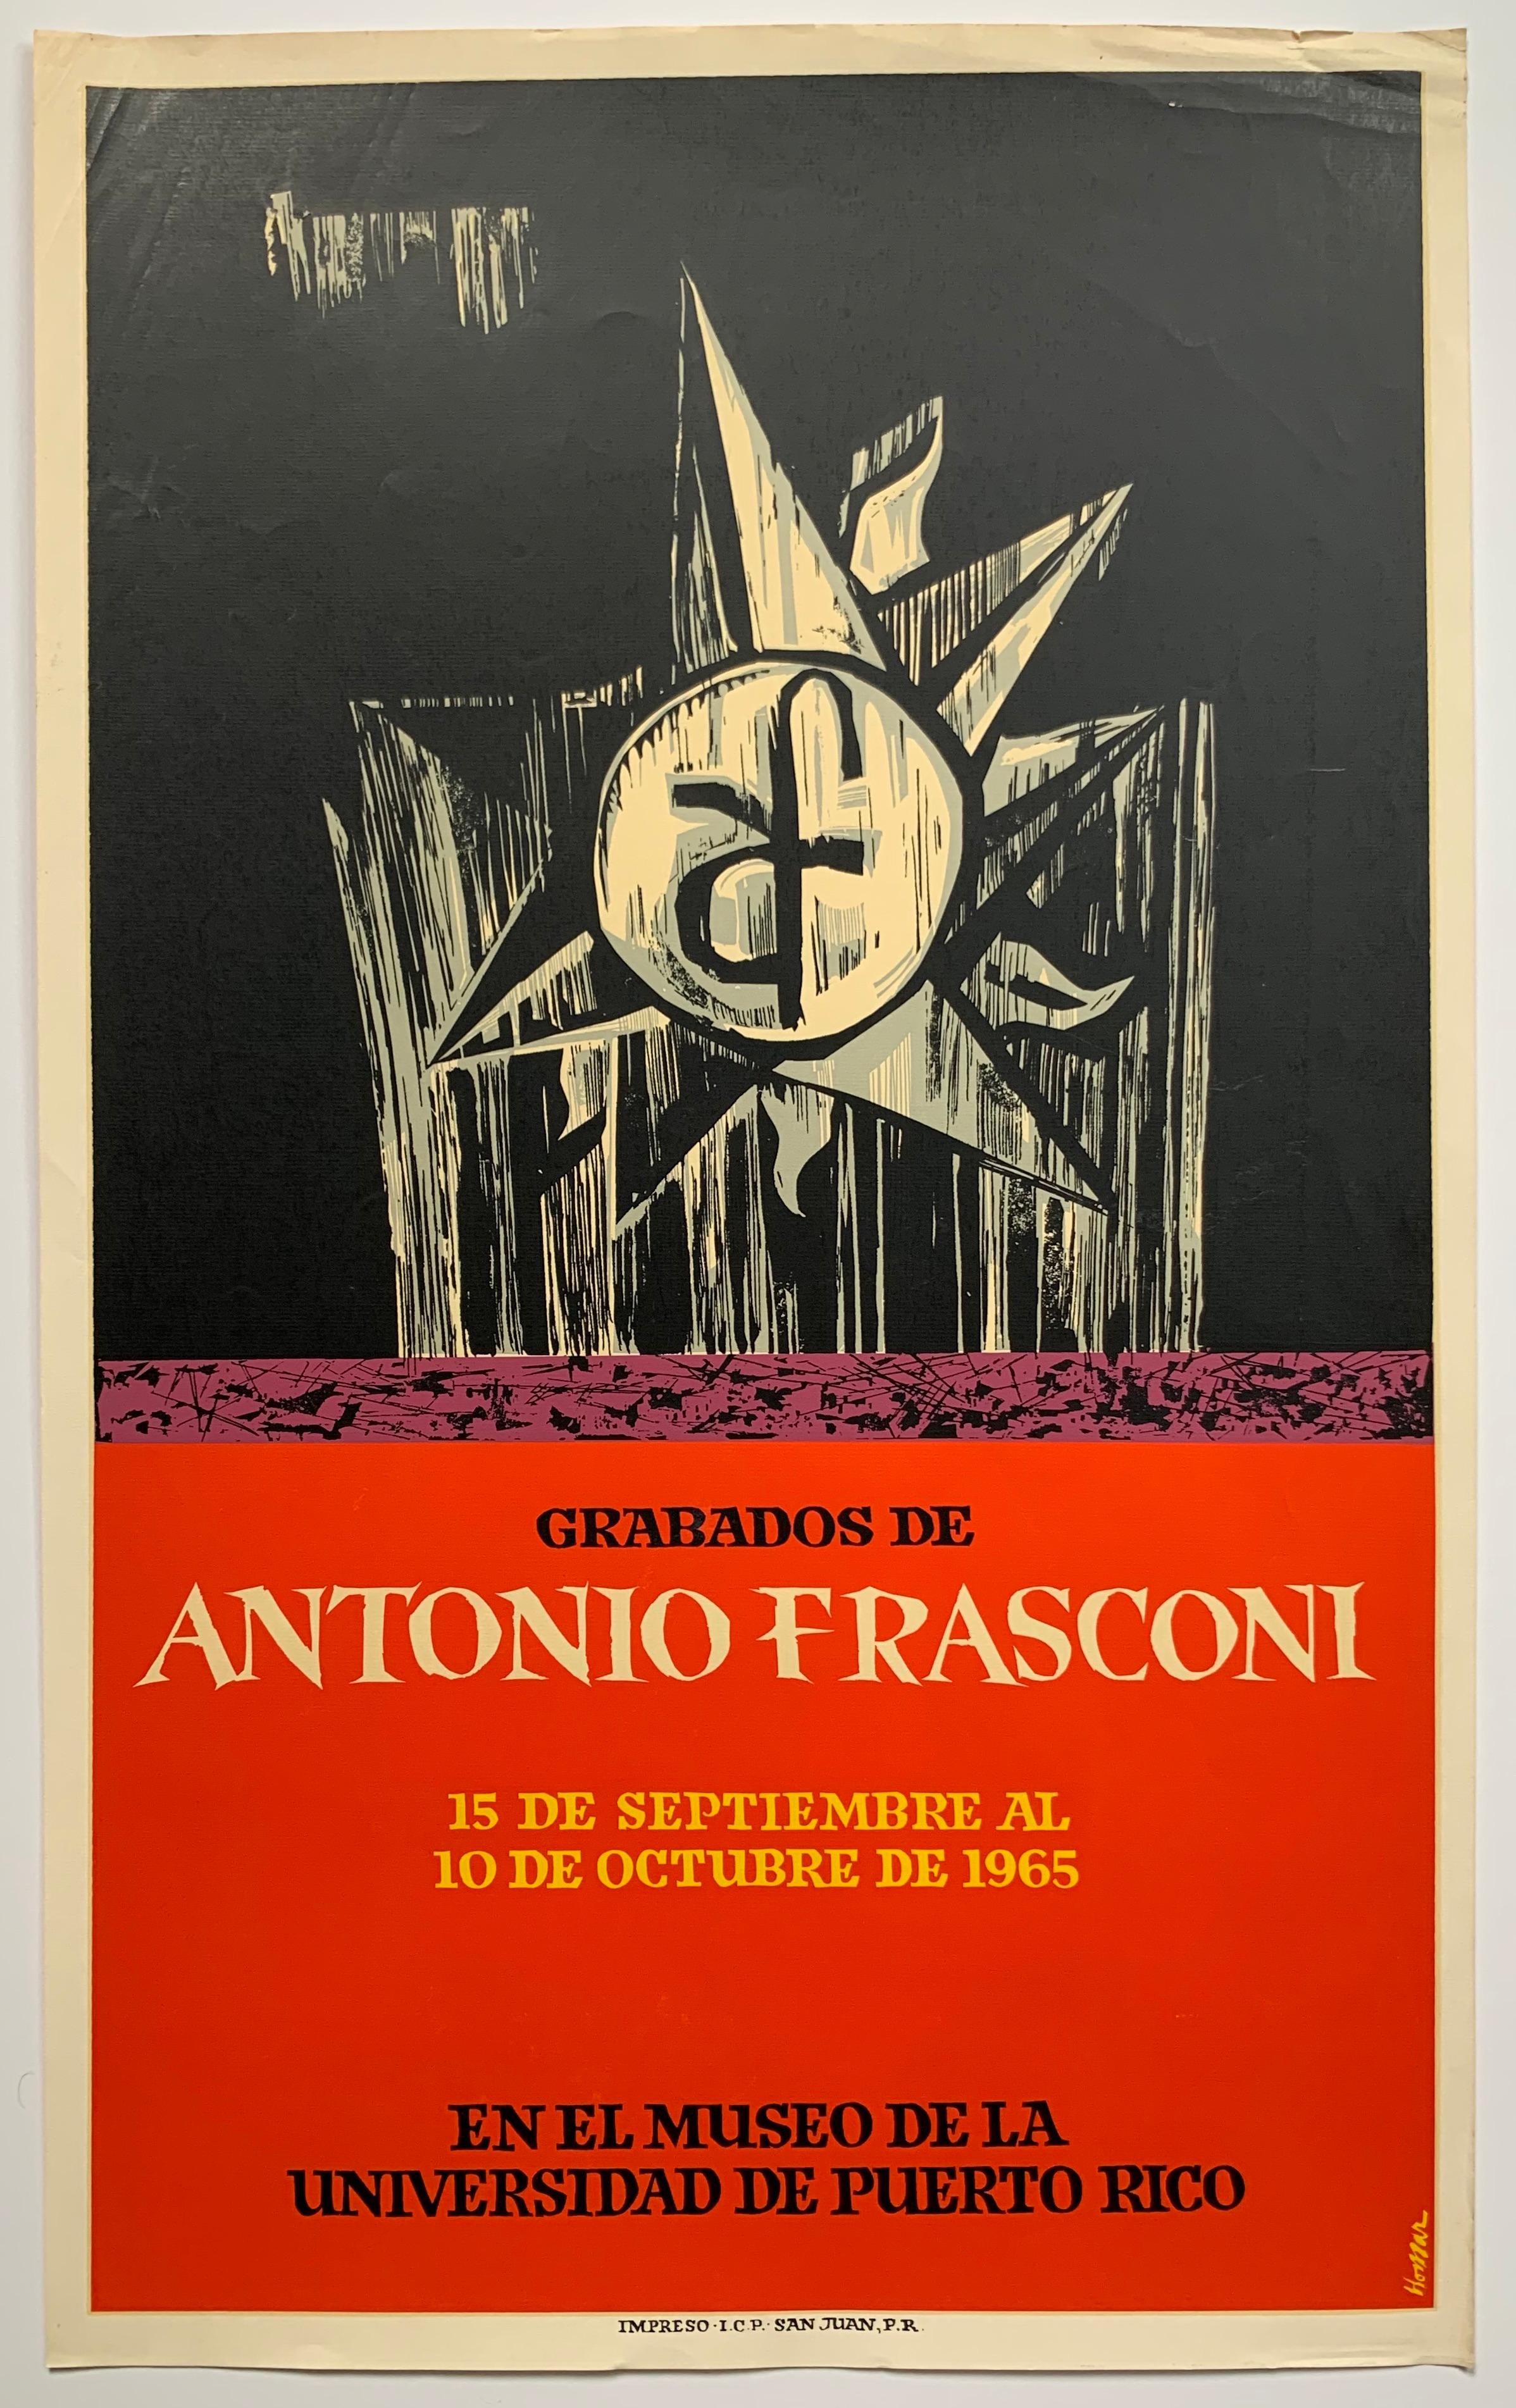 Abstract Print Lorenzo Homar - Affiche d'exposition d'Antonio Frasconi datant du milieu du siècle dernier (artiste guatémaltèque) 